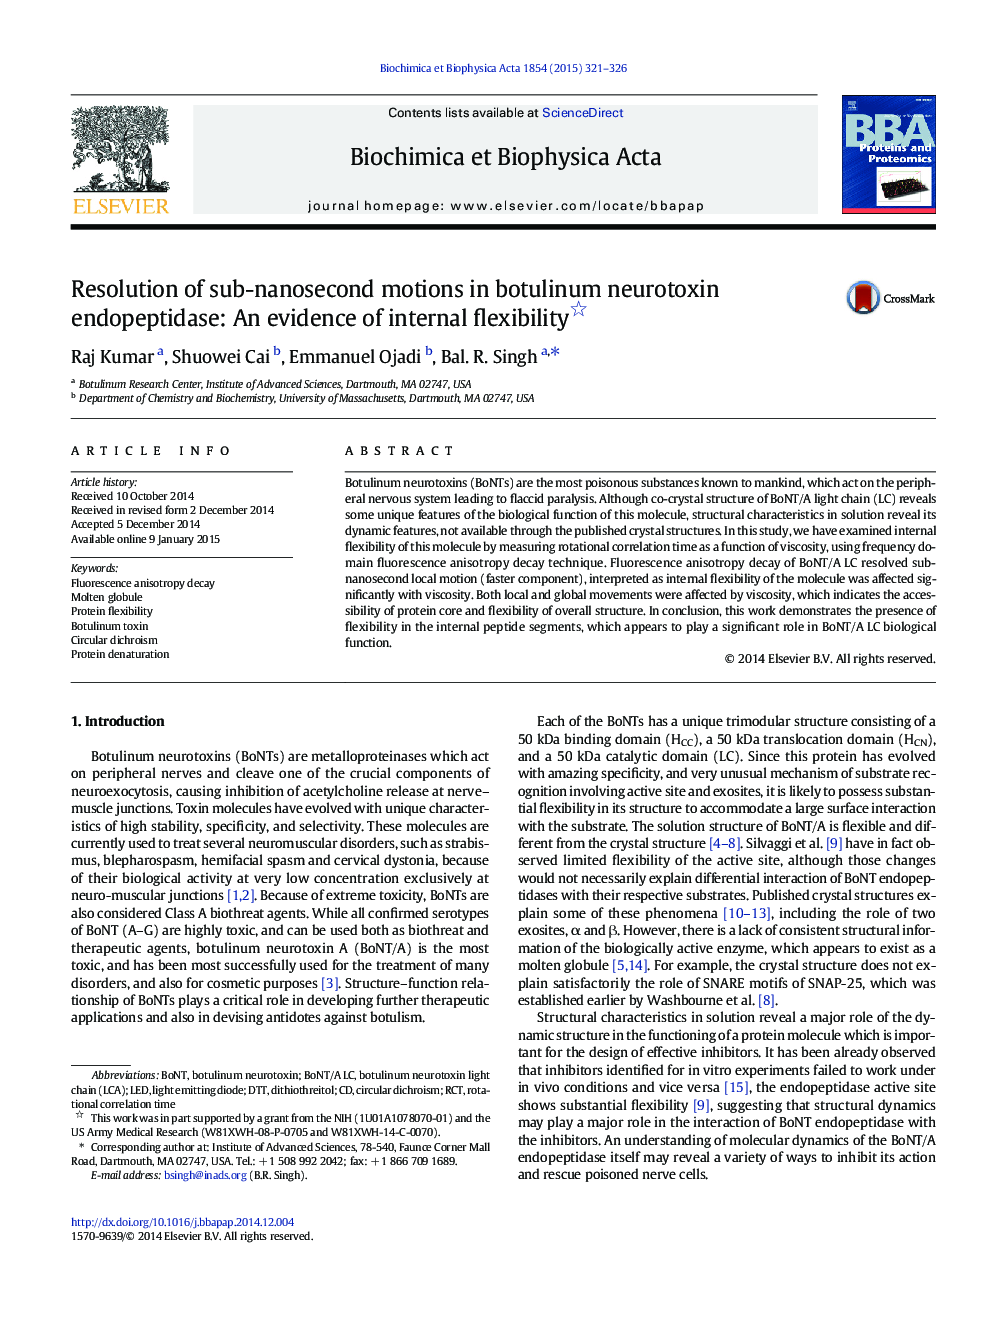 حل حرکات نیمه نانو ساکن در اندوپپتیداز نوروتوکسین بوتولینوم: شواهدی از انعطاف پذیری داخلی 